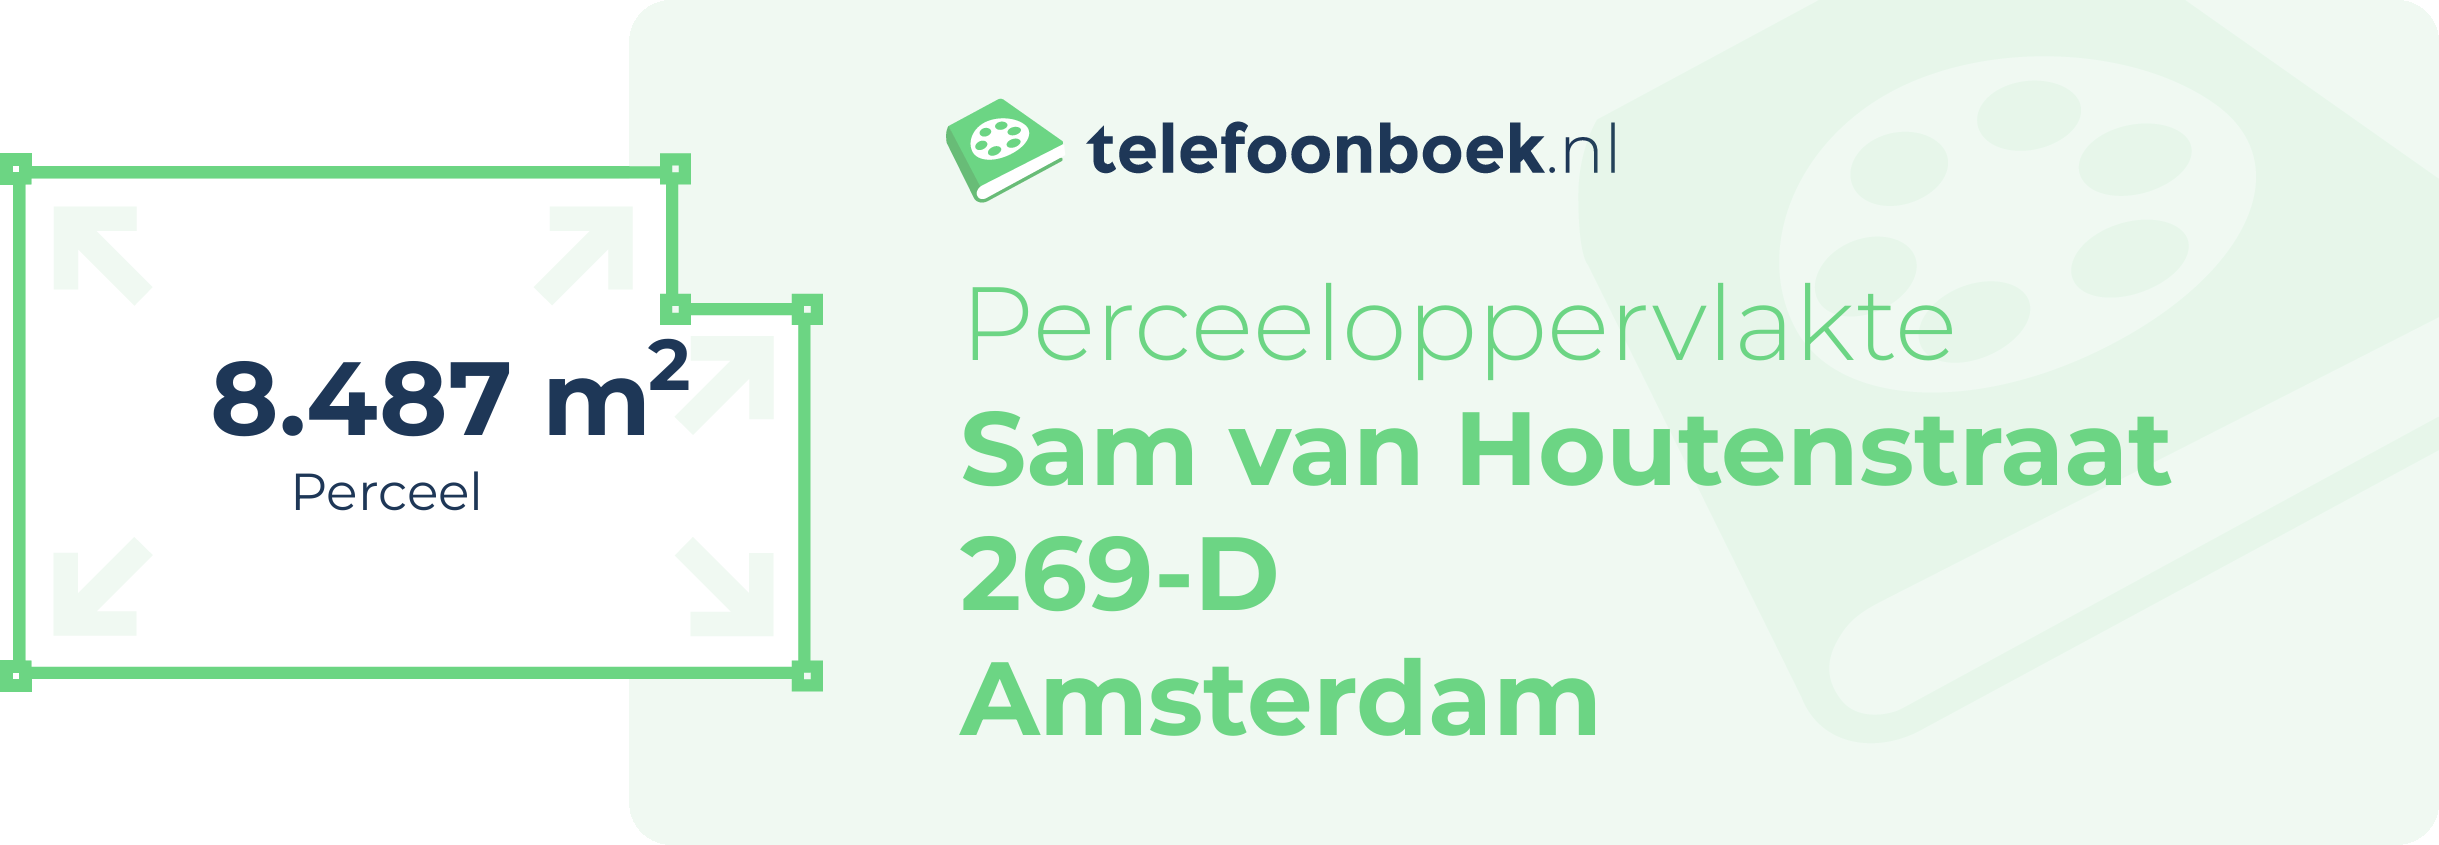 Perceeloppervlakte Sam Van Houtenstraat 269-D Amsterdam